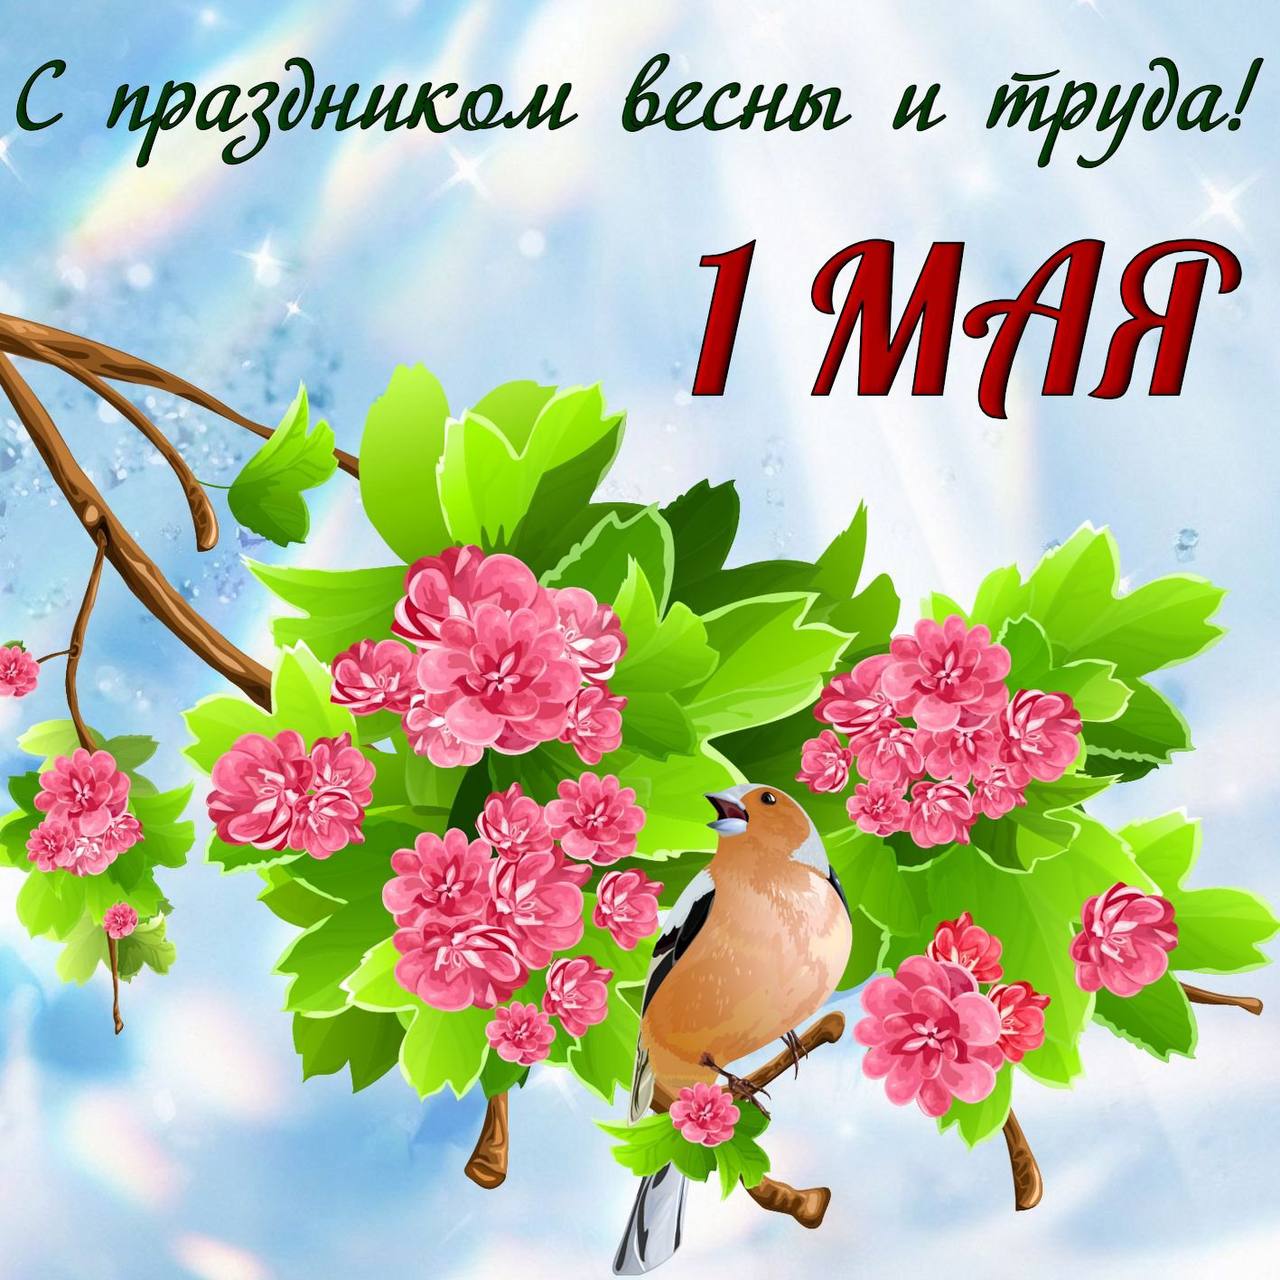 ООО «Опытный завод №31 Гражданской авиации» поздравляет коллег с праздником Весны и Труда! 